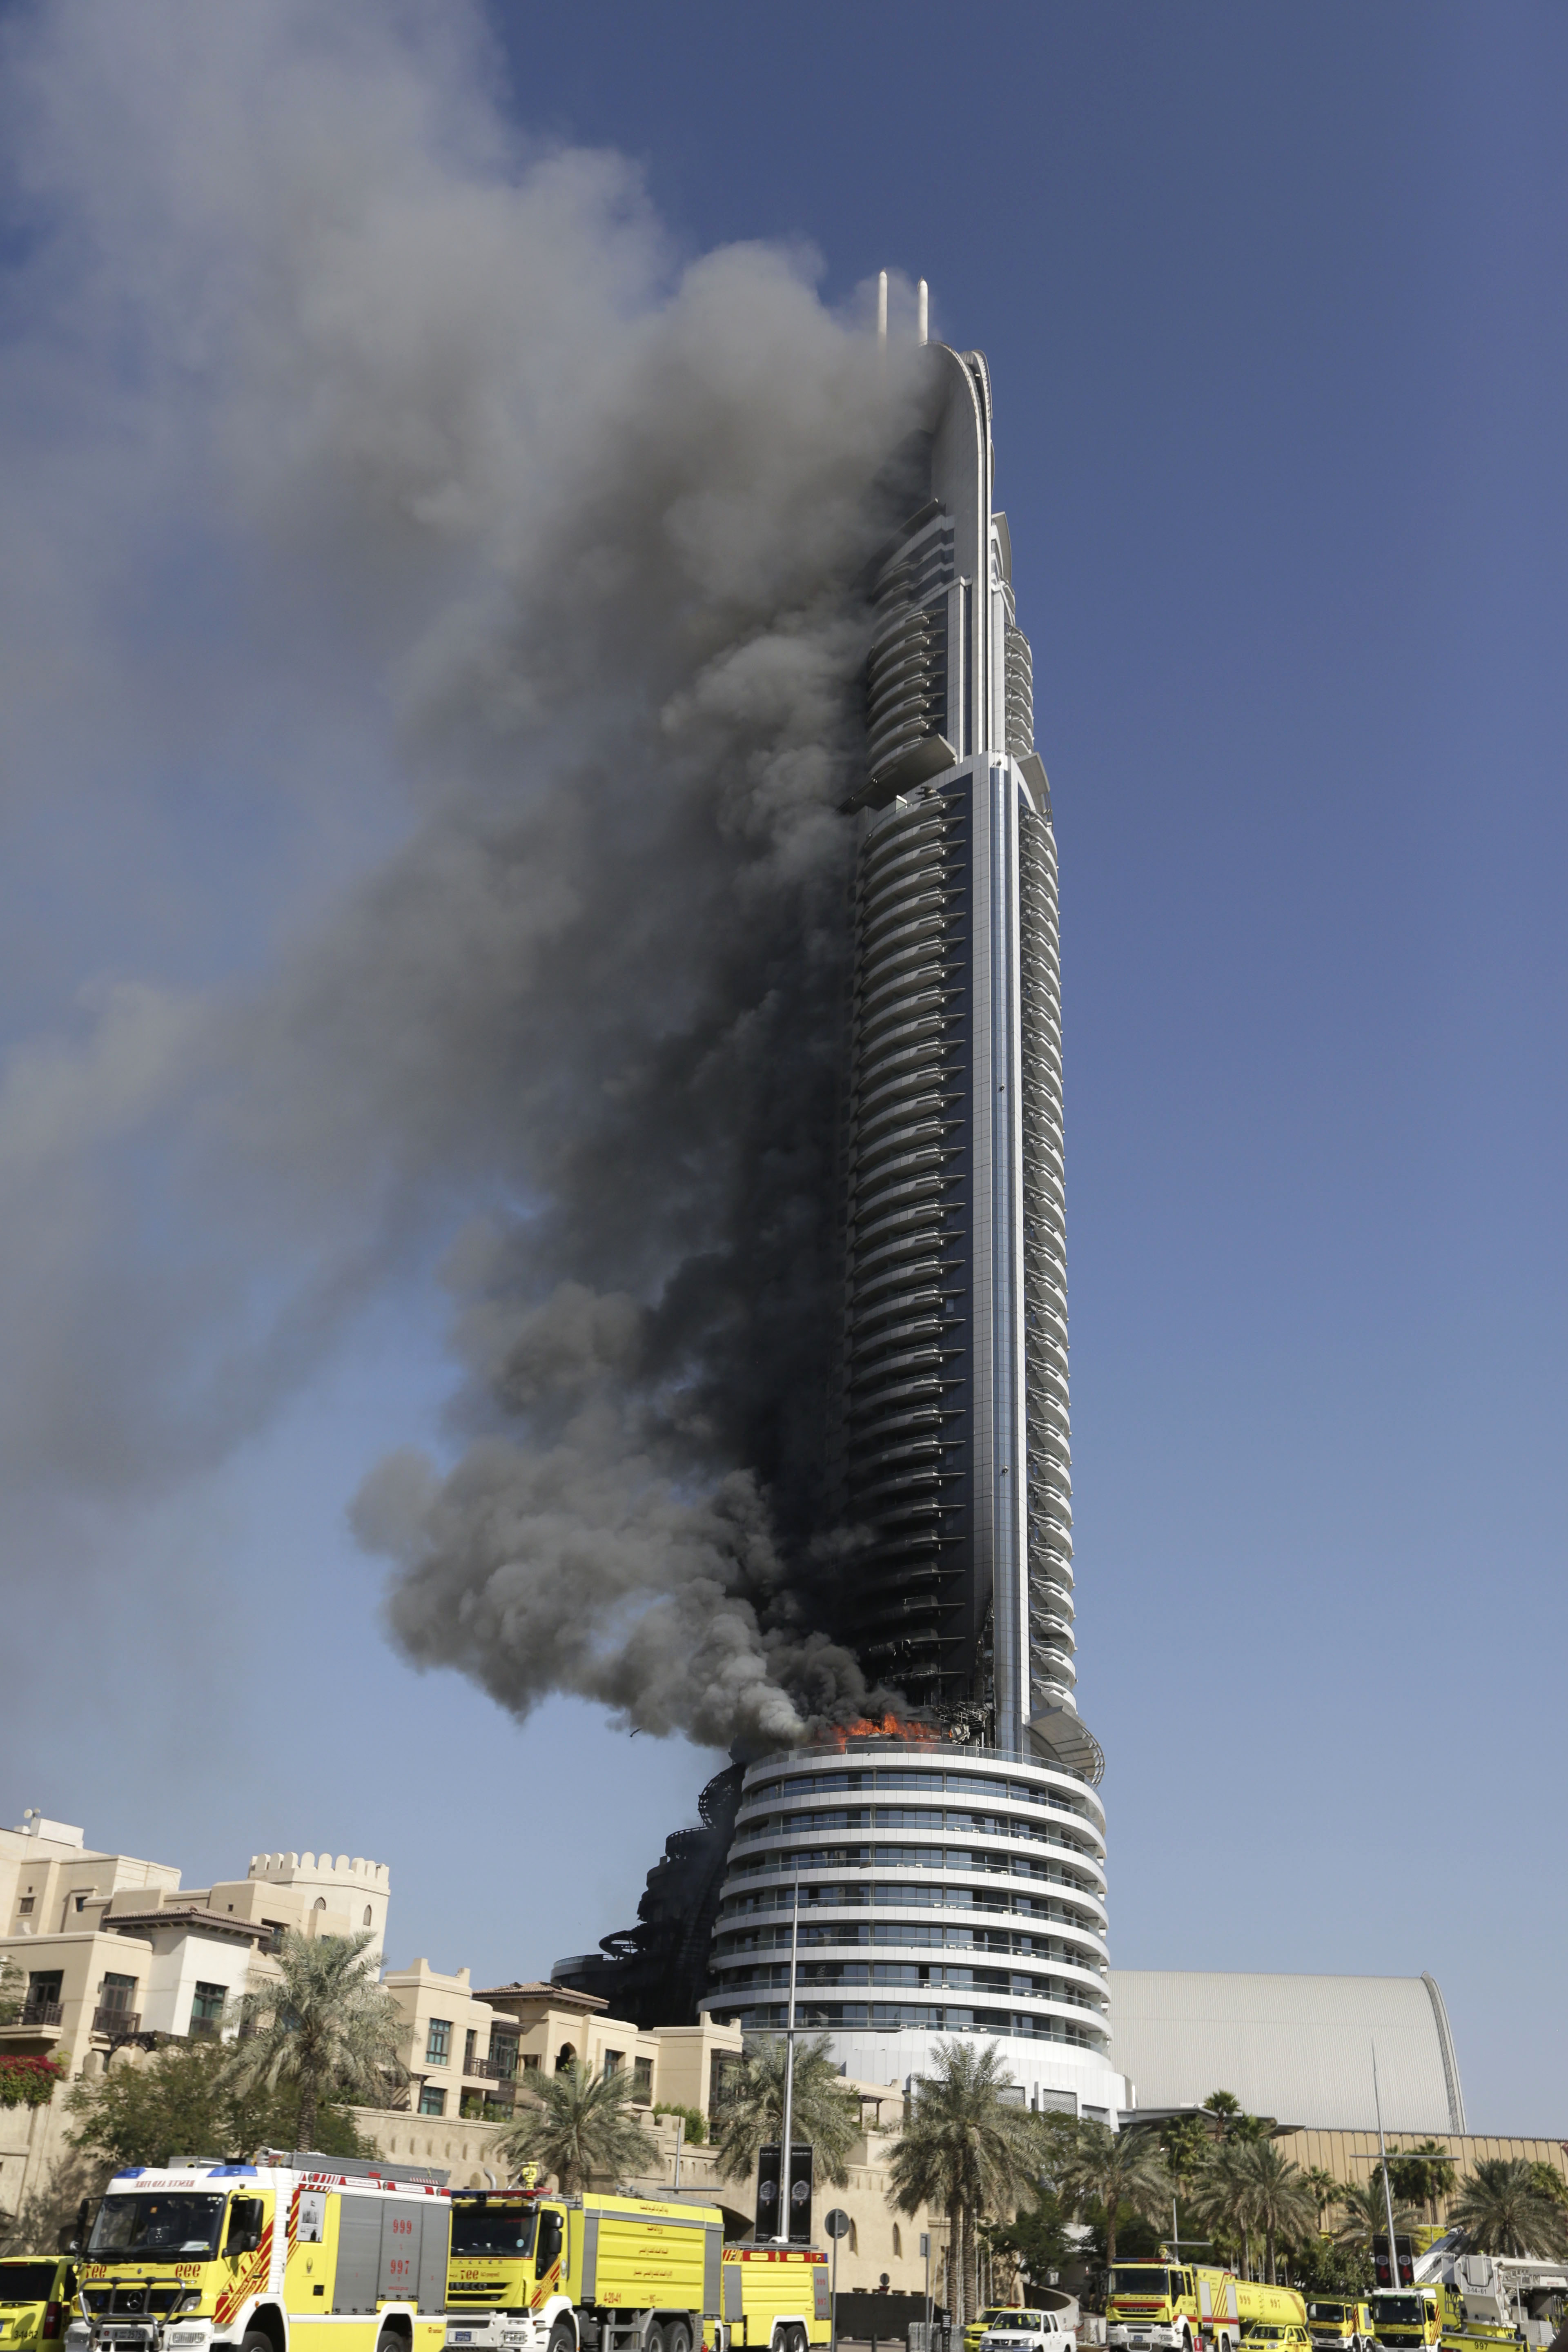 New Year's Eve skyscraper fire in Dubai smolders into 2016 - The Blade